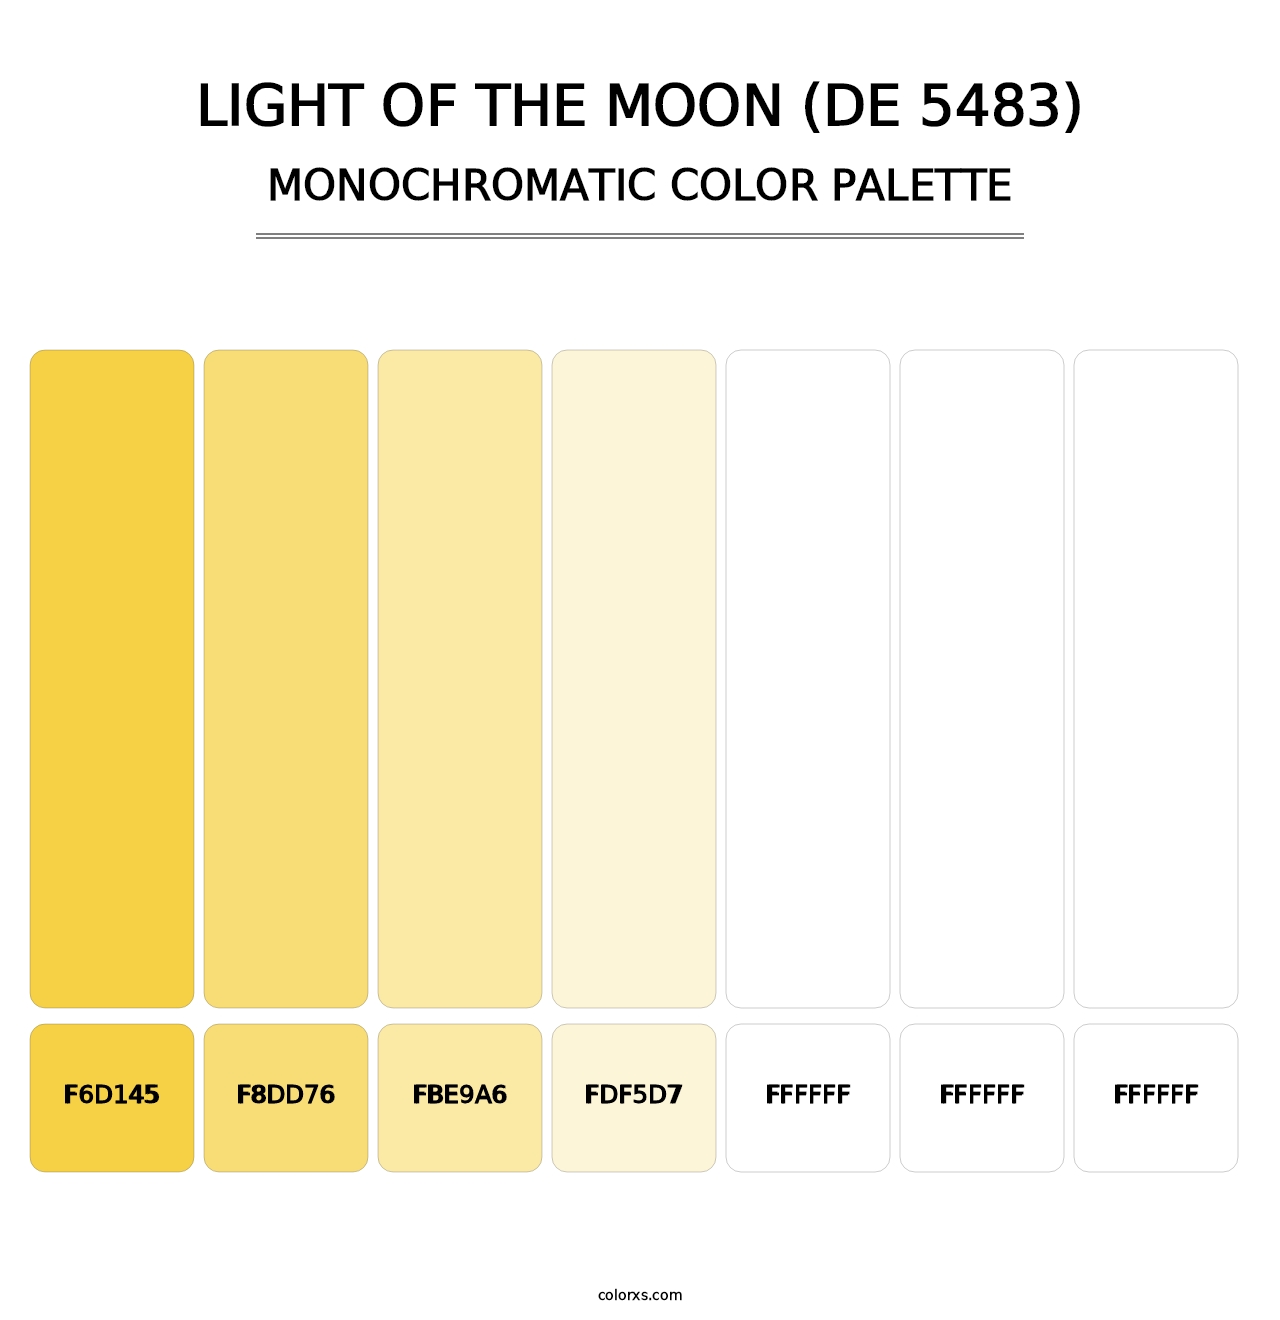 Light of the Moon (DE 5483) - Monochromatic Color Palette